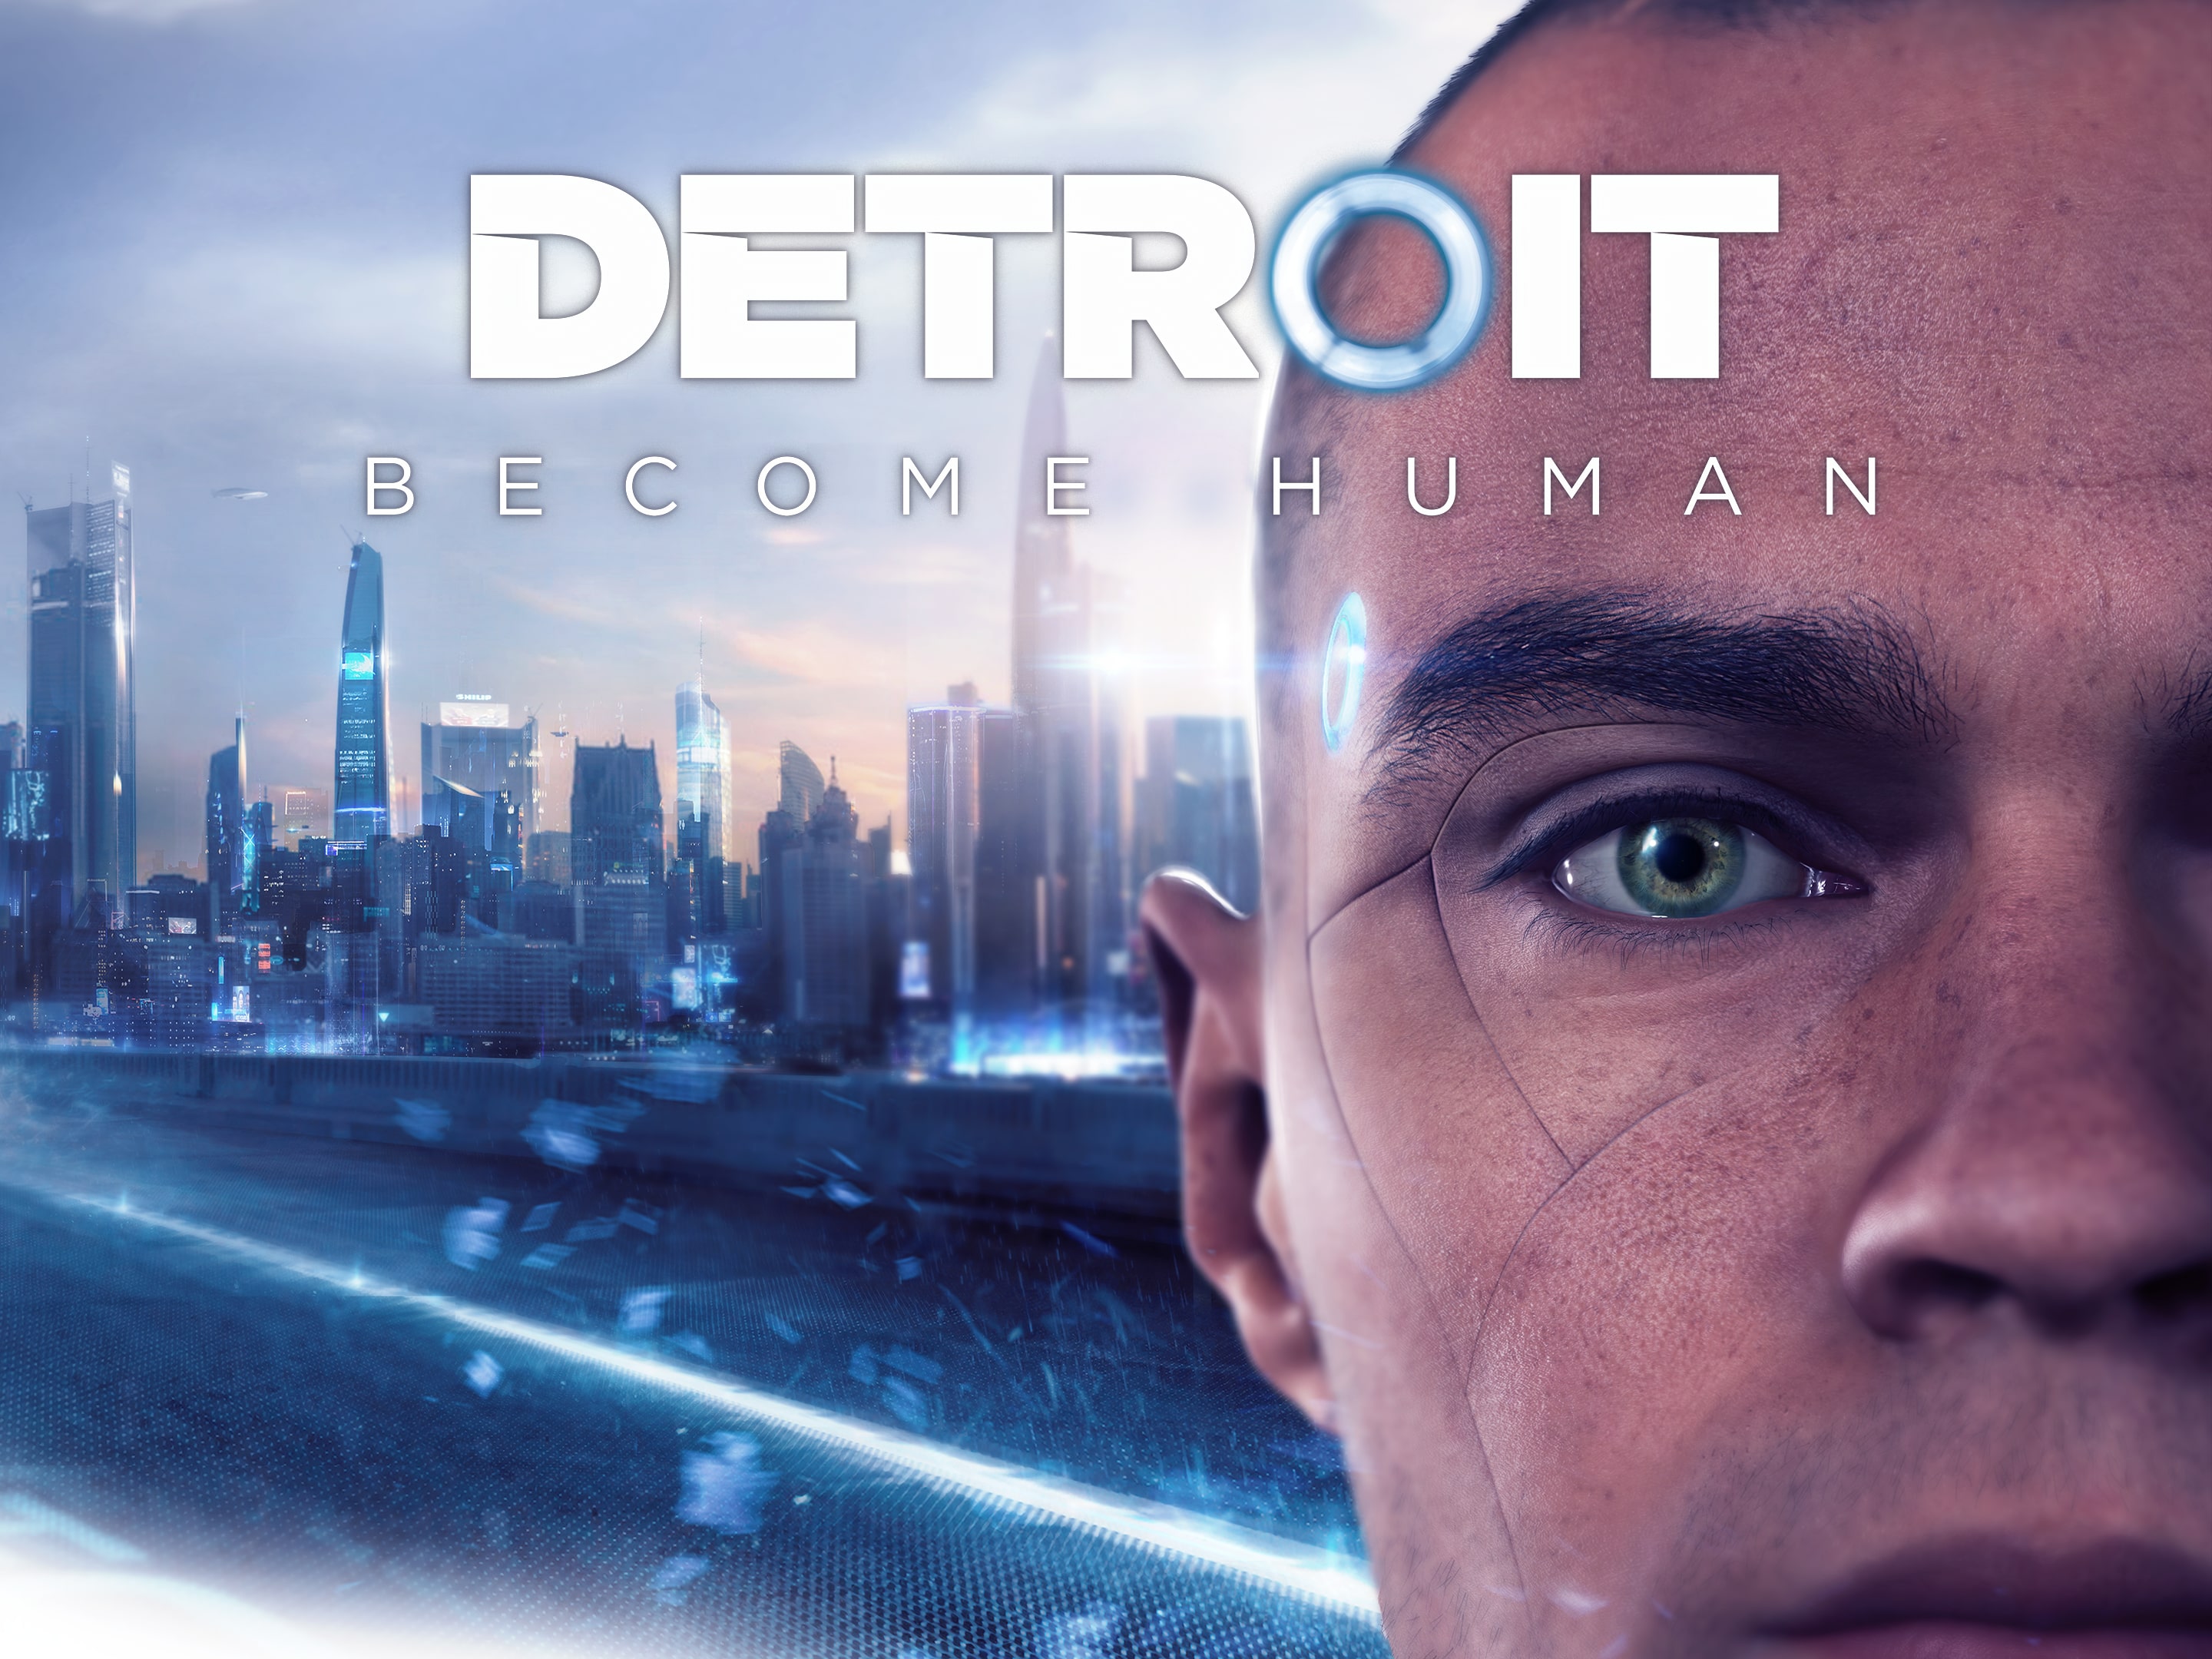 Detroit: Become Human デジタルデラックスエディション